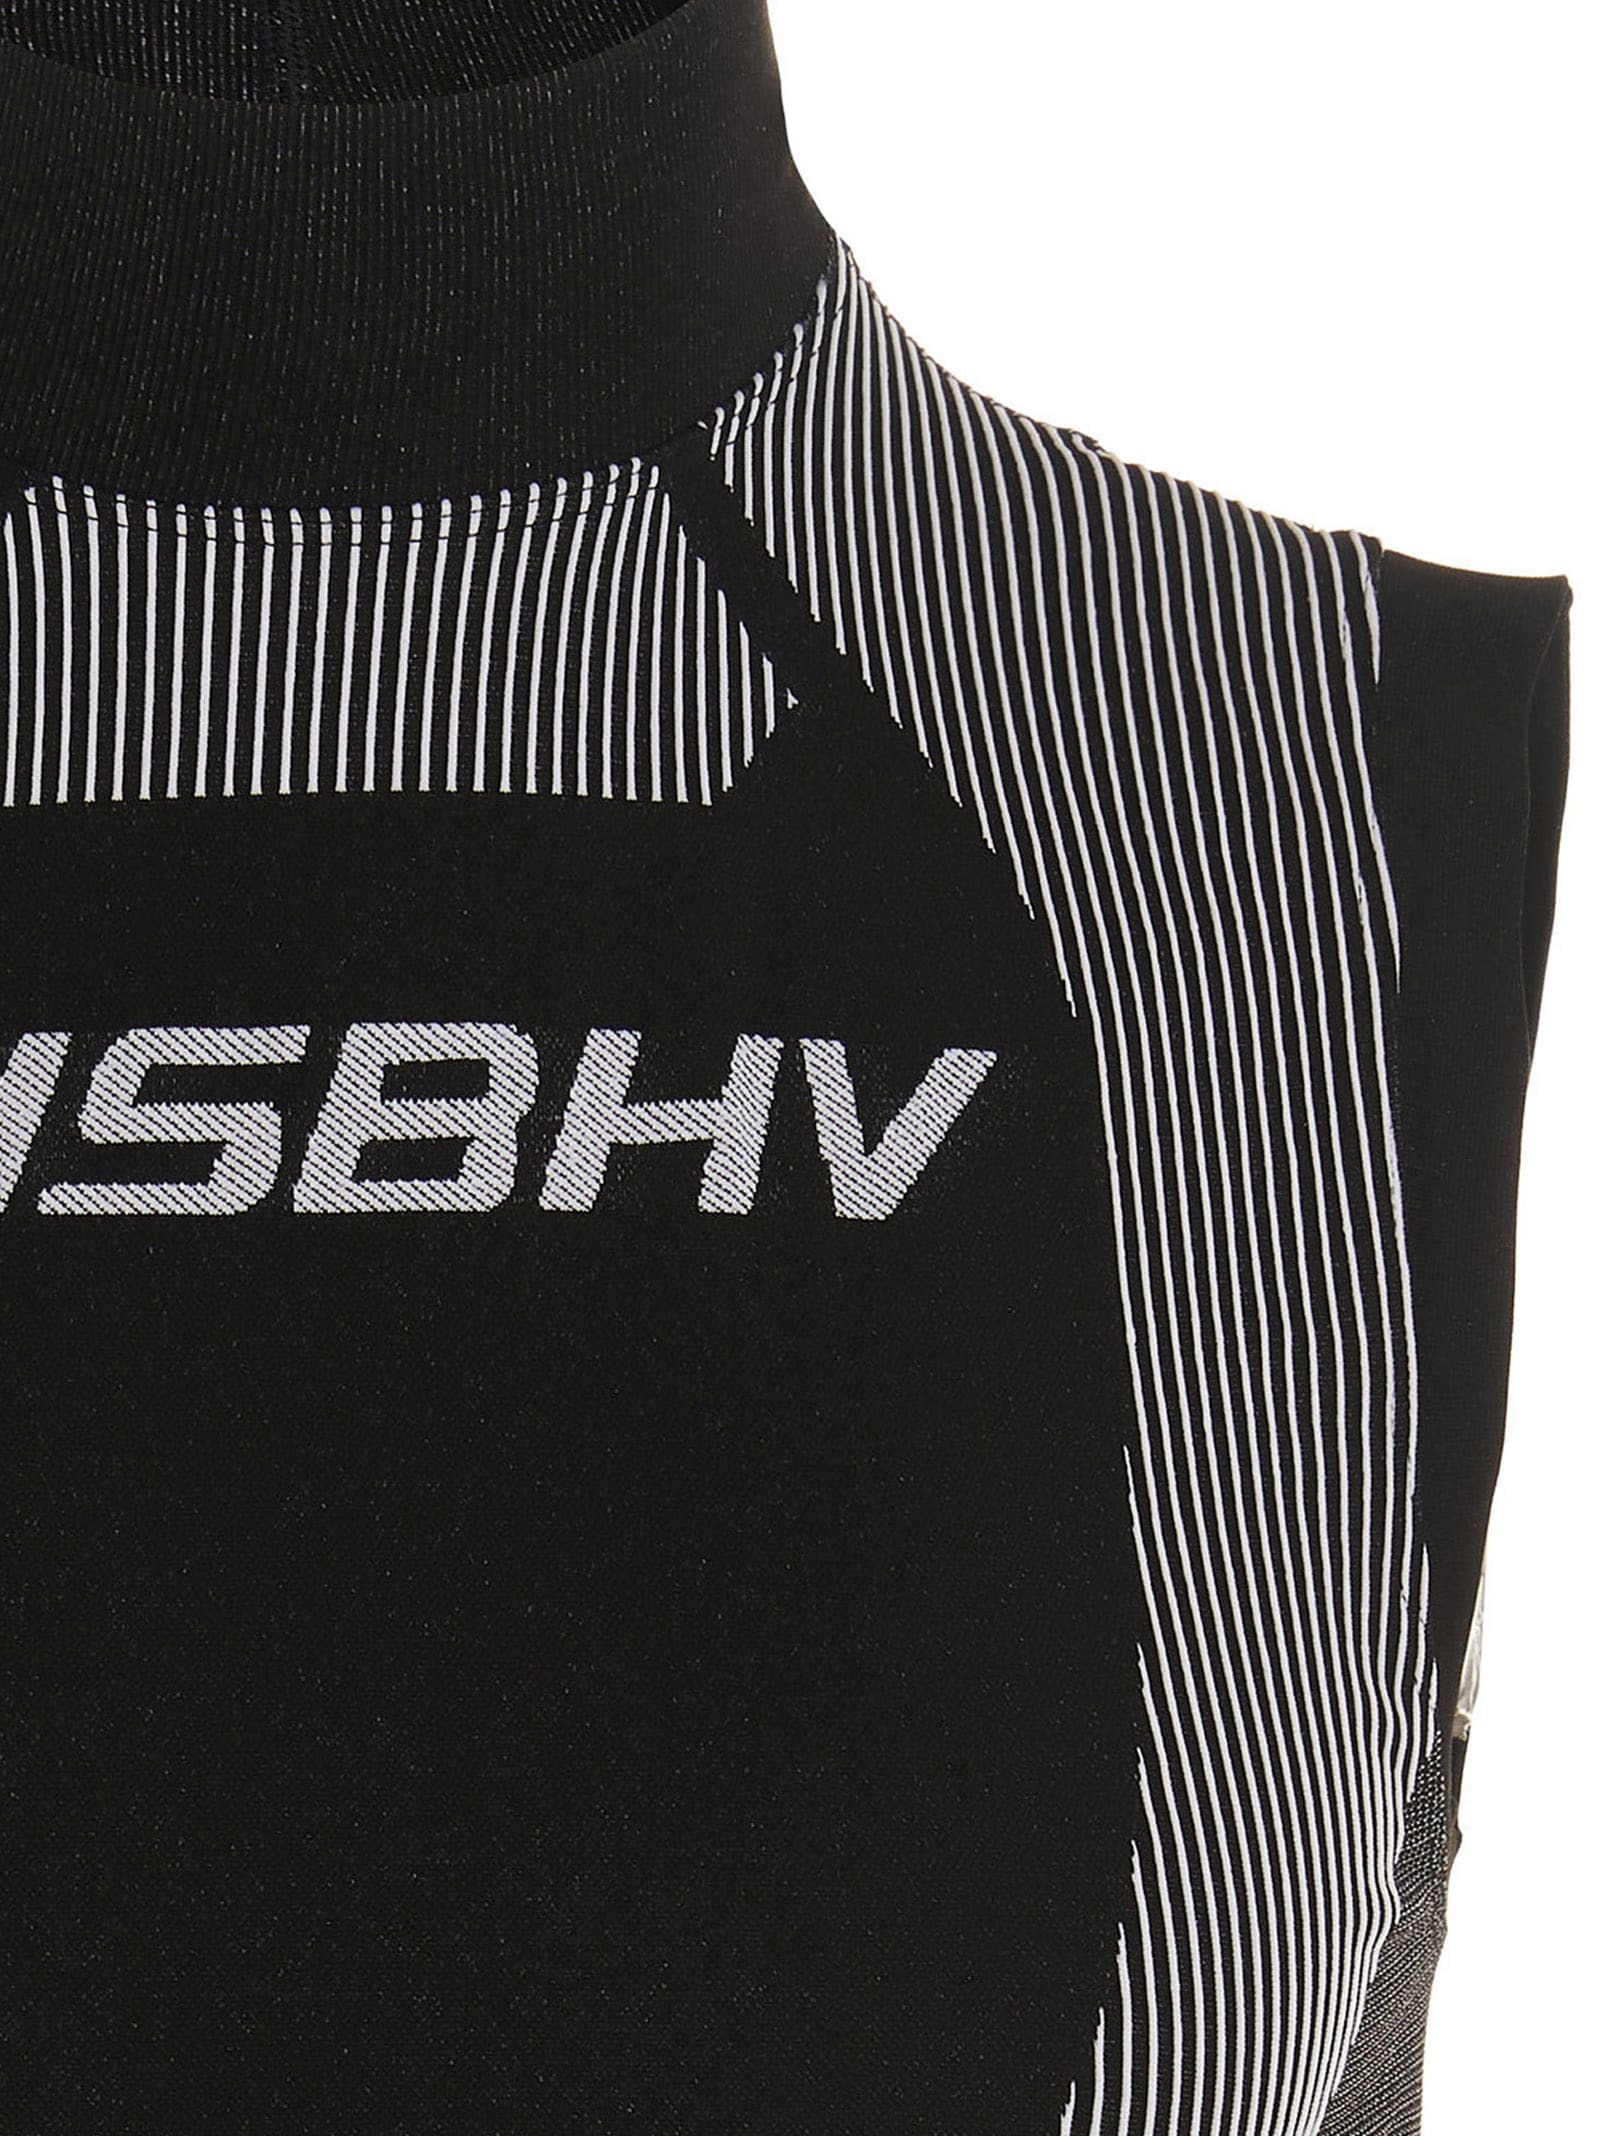 Shop Misbhv Sport Tank Top In White/black